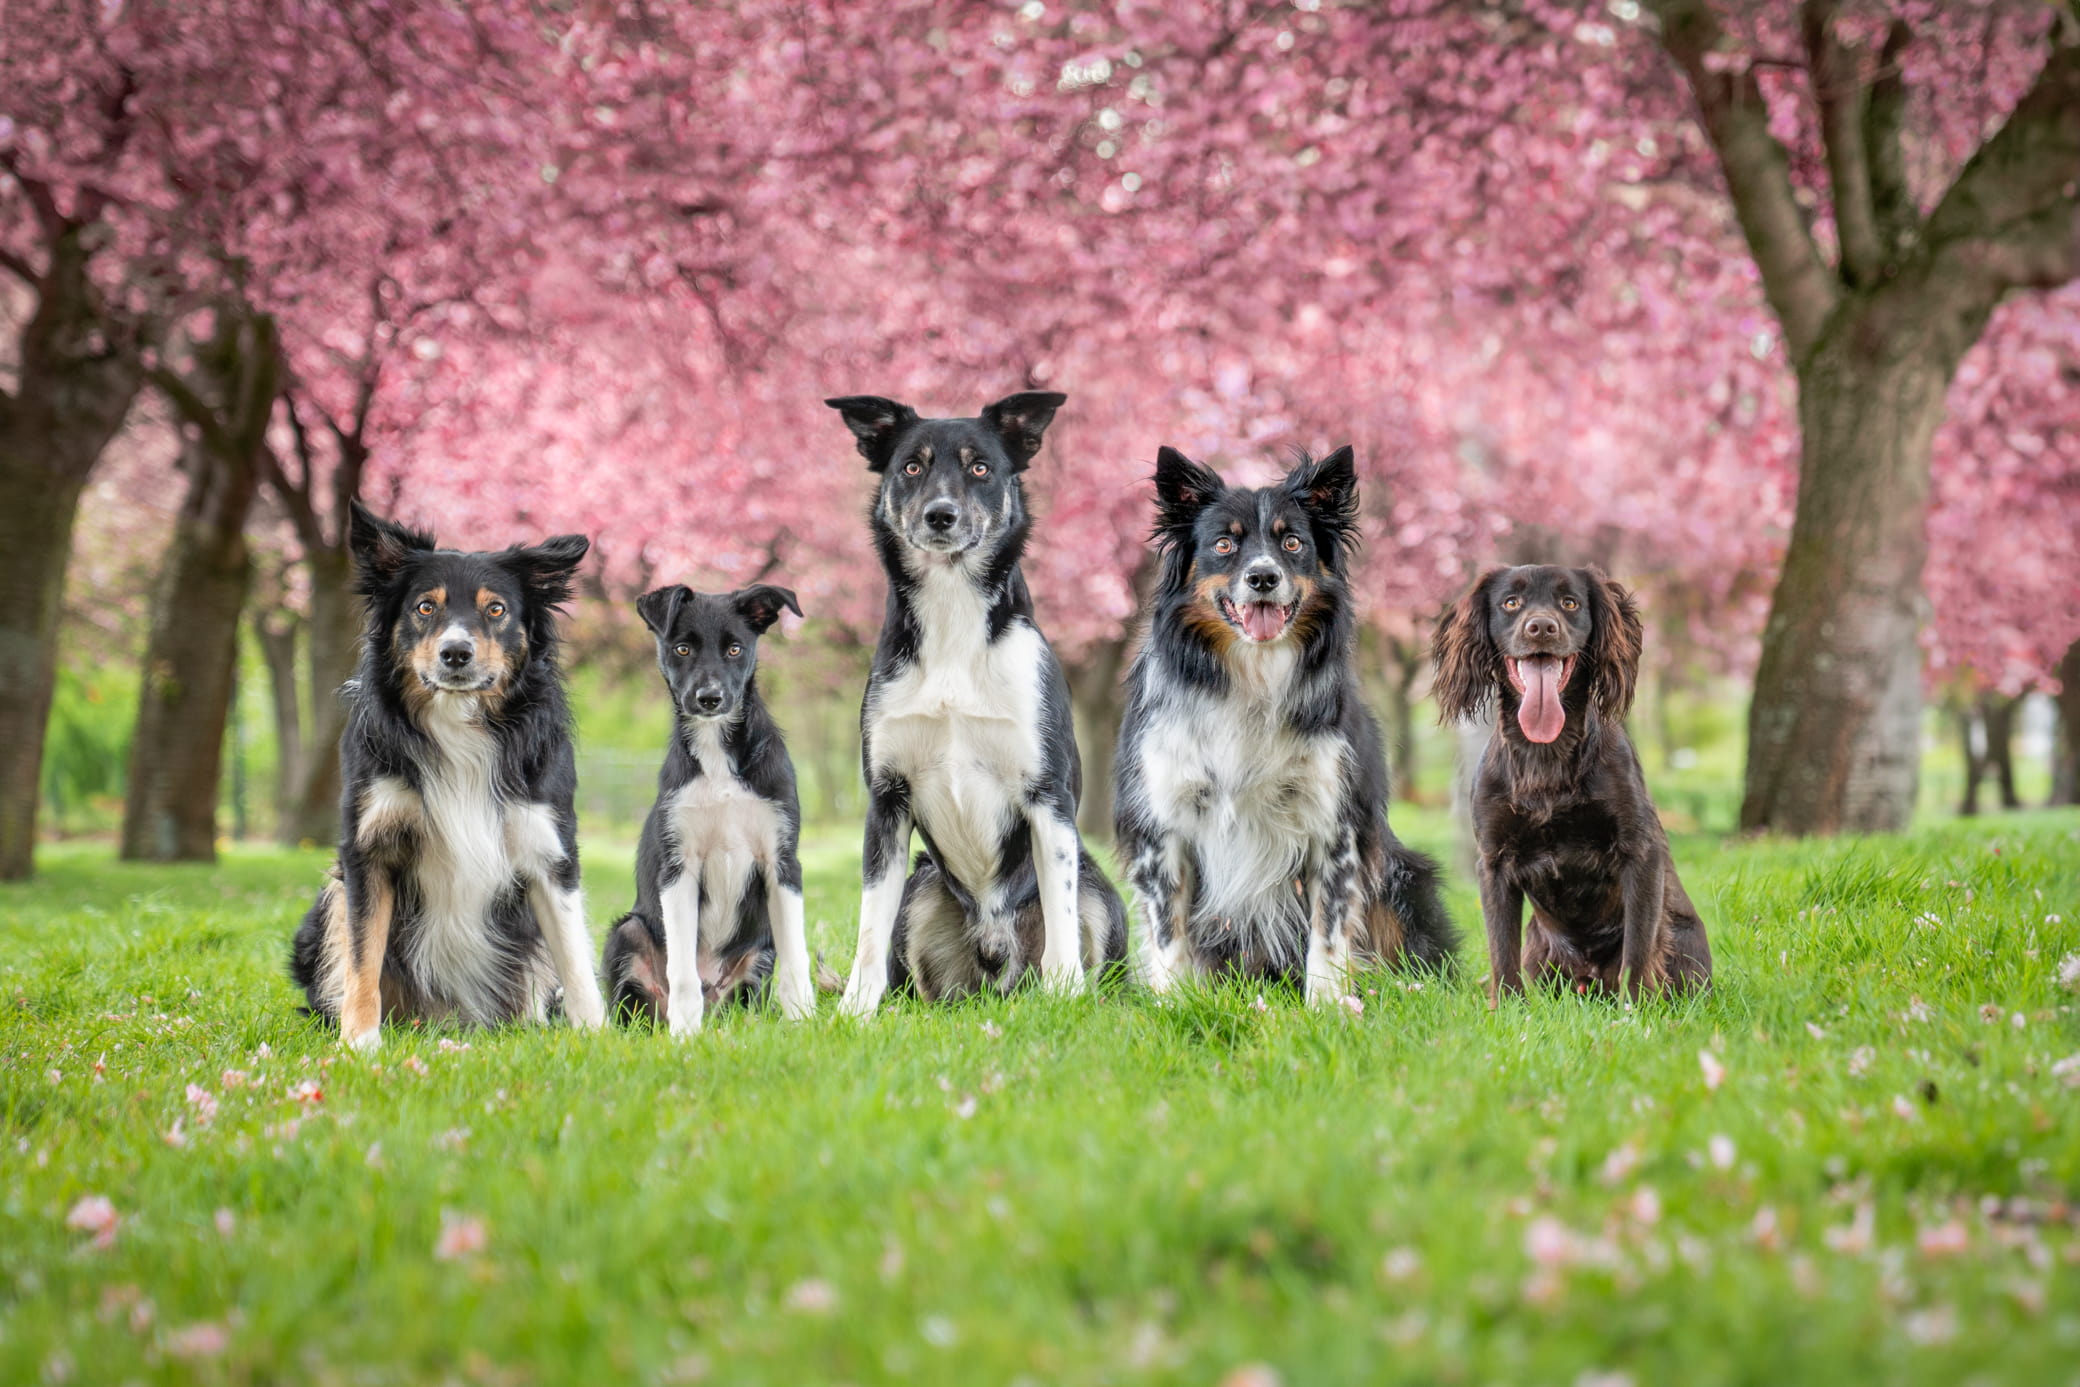 Pootografie-Honden-katten-huisdier-fotografie-fotograaf-limburg-heerlen-beste-fotograaf-hondenfotograaf-joah-brouwers-pooto-6